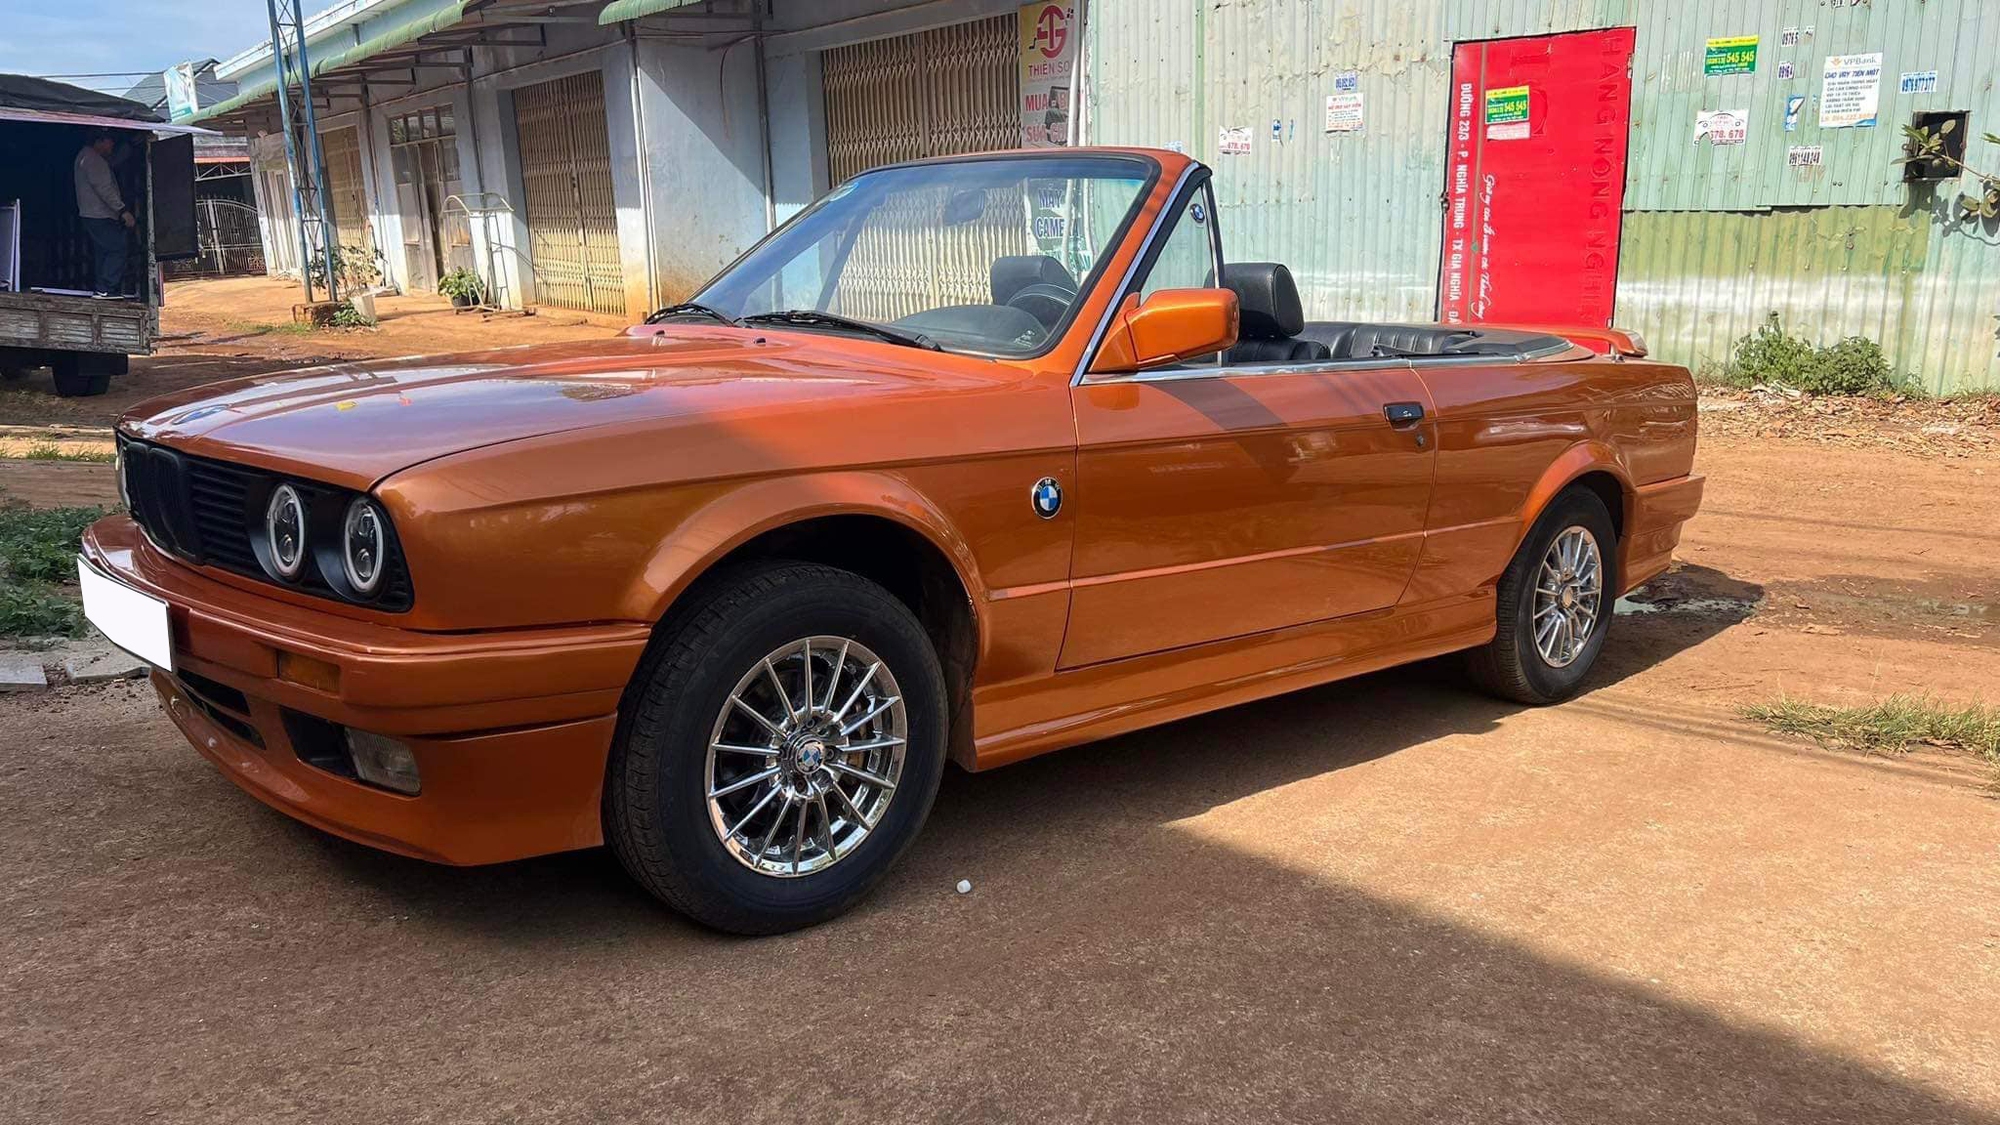 Bán BMW E30 30 năm tuổi đắt ngang Mazda6 ‘đập hộp’, người bán chia sẻ: Là hàng độc nhất trên thị trường, nguyên bản đến 98% - Ảnh 6.